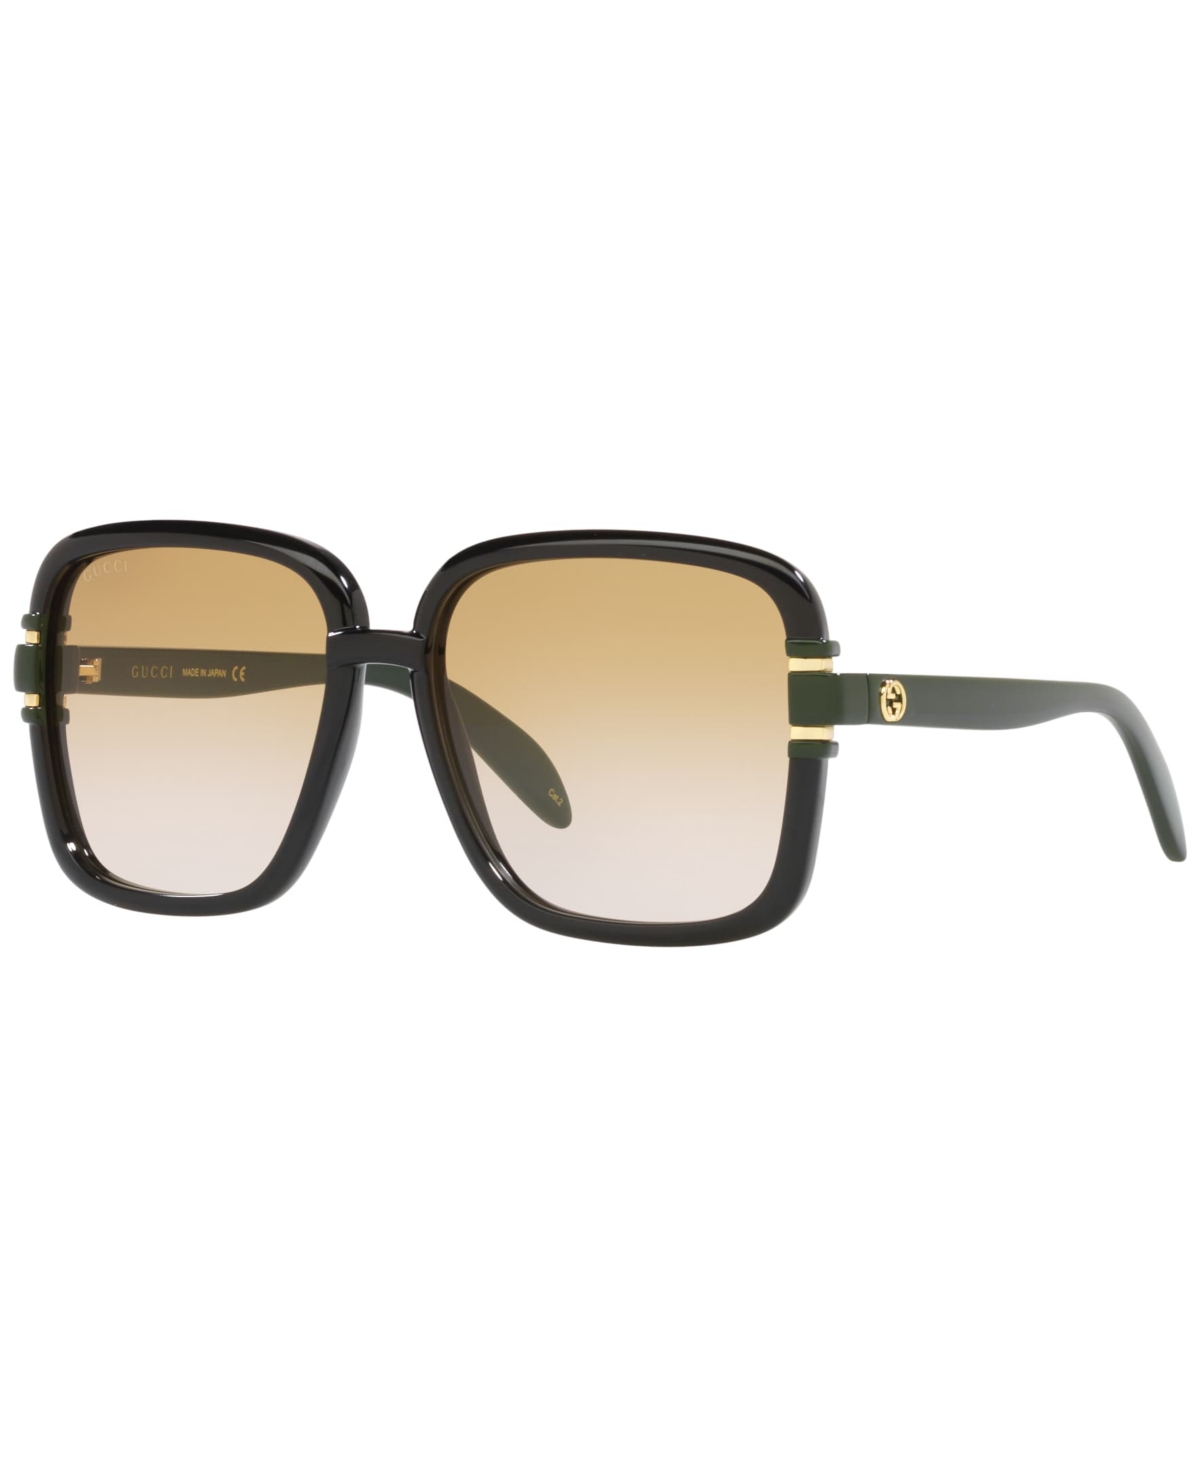 Gucci Women's Sunglasses, Gg1066s In Gold-tone,black